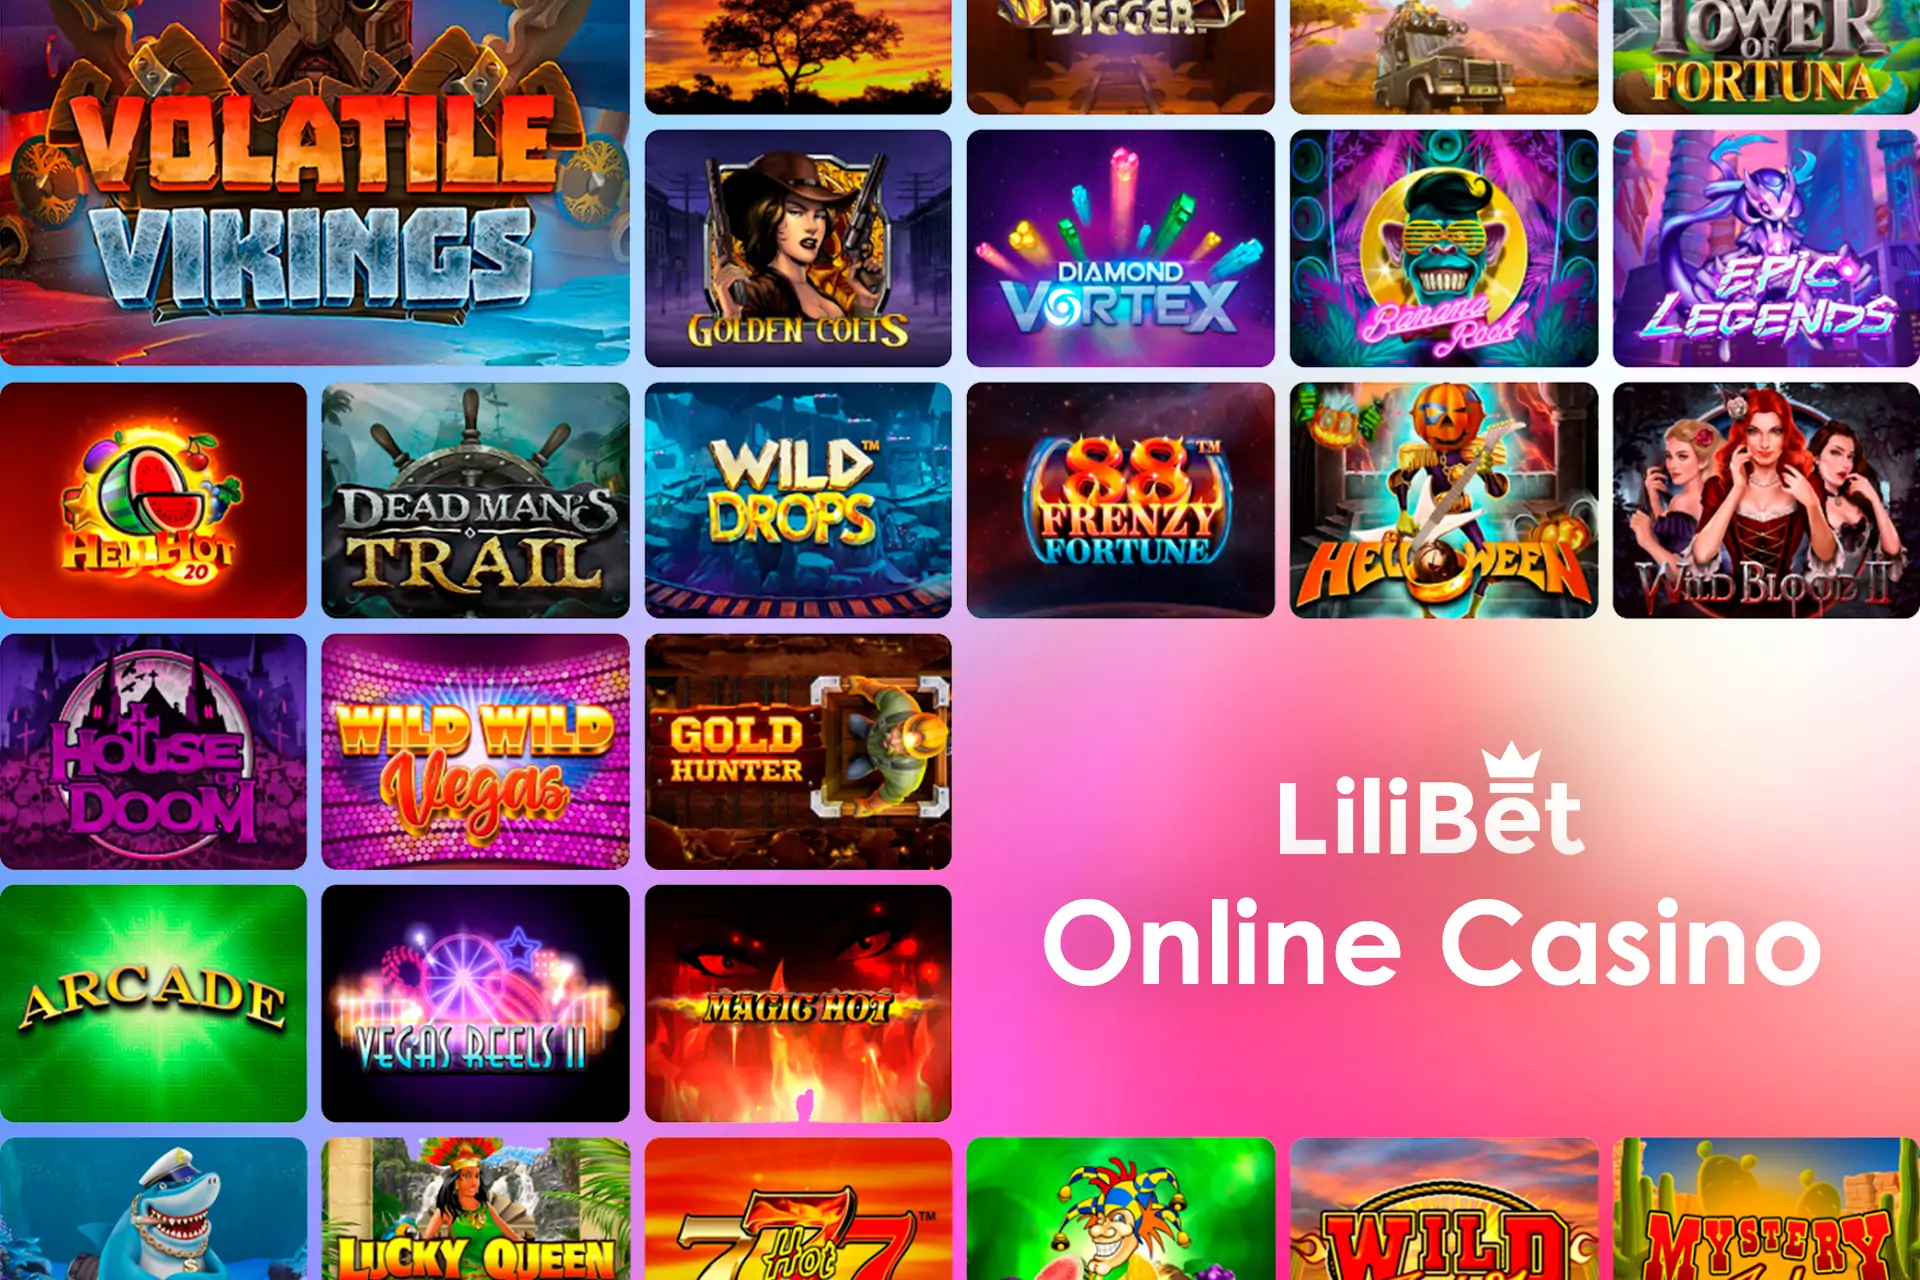 Lilibet कैसीनो में, आप एक डीलर के साथ स्लॉट और लाइव टेबल गेम खेल सकते हैं।